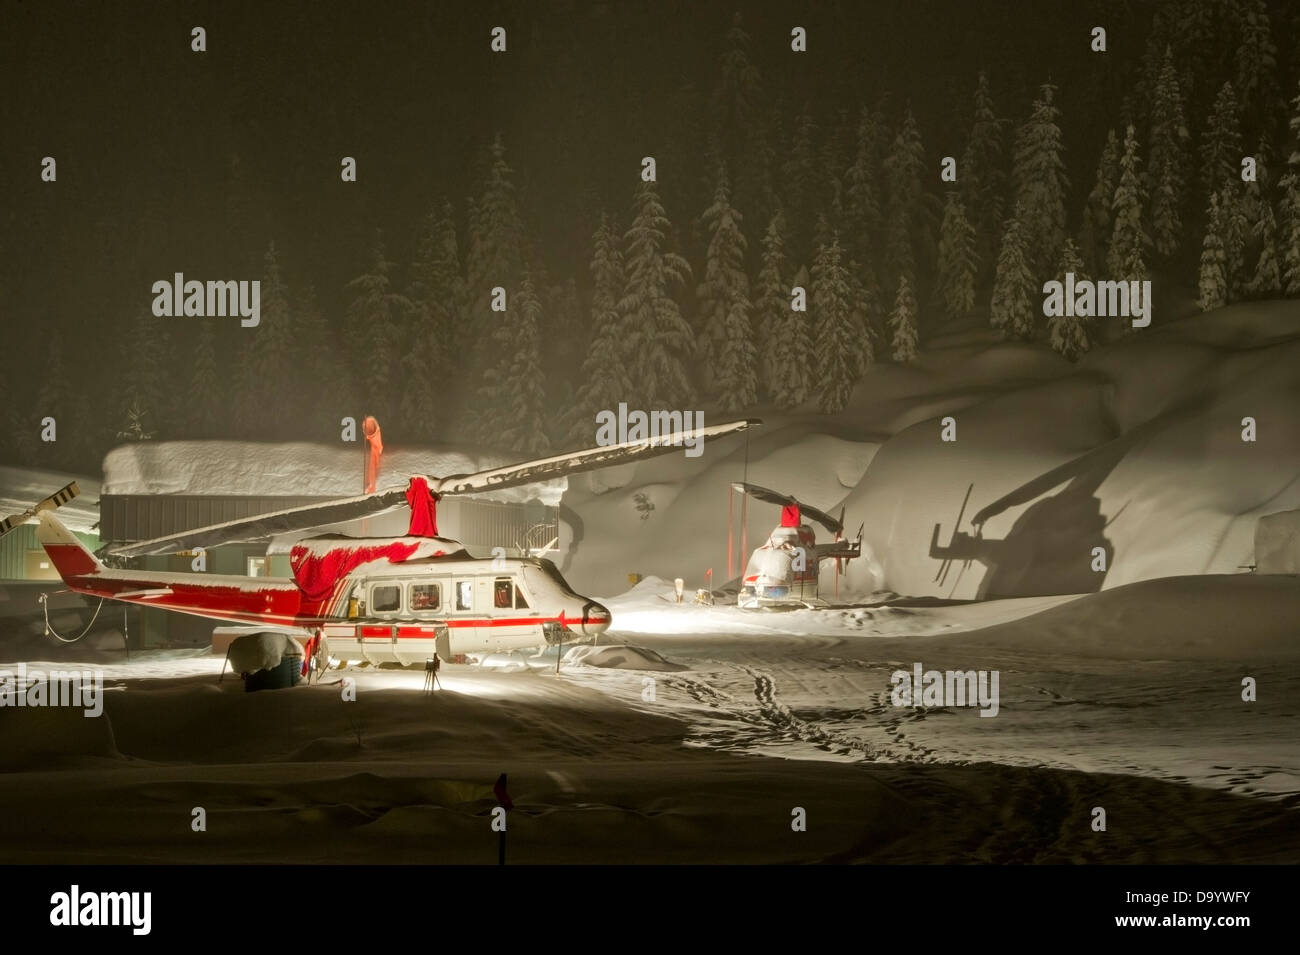 Les hélicoptères utilisés pour l'héliski parqué dans de fortes chutes de neige dans la nuit. Banque D'Images